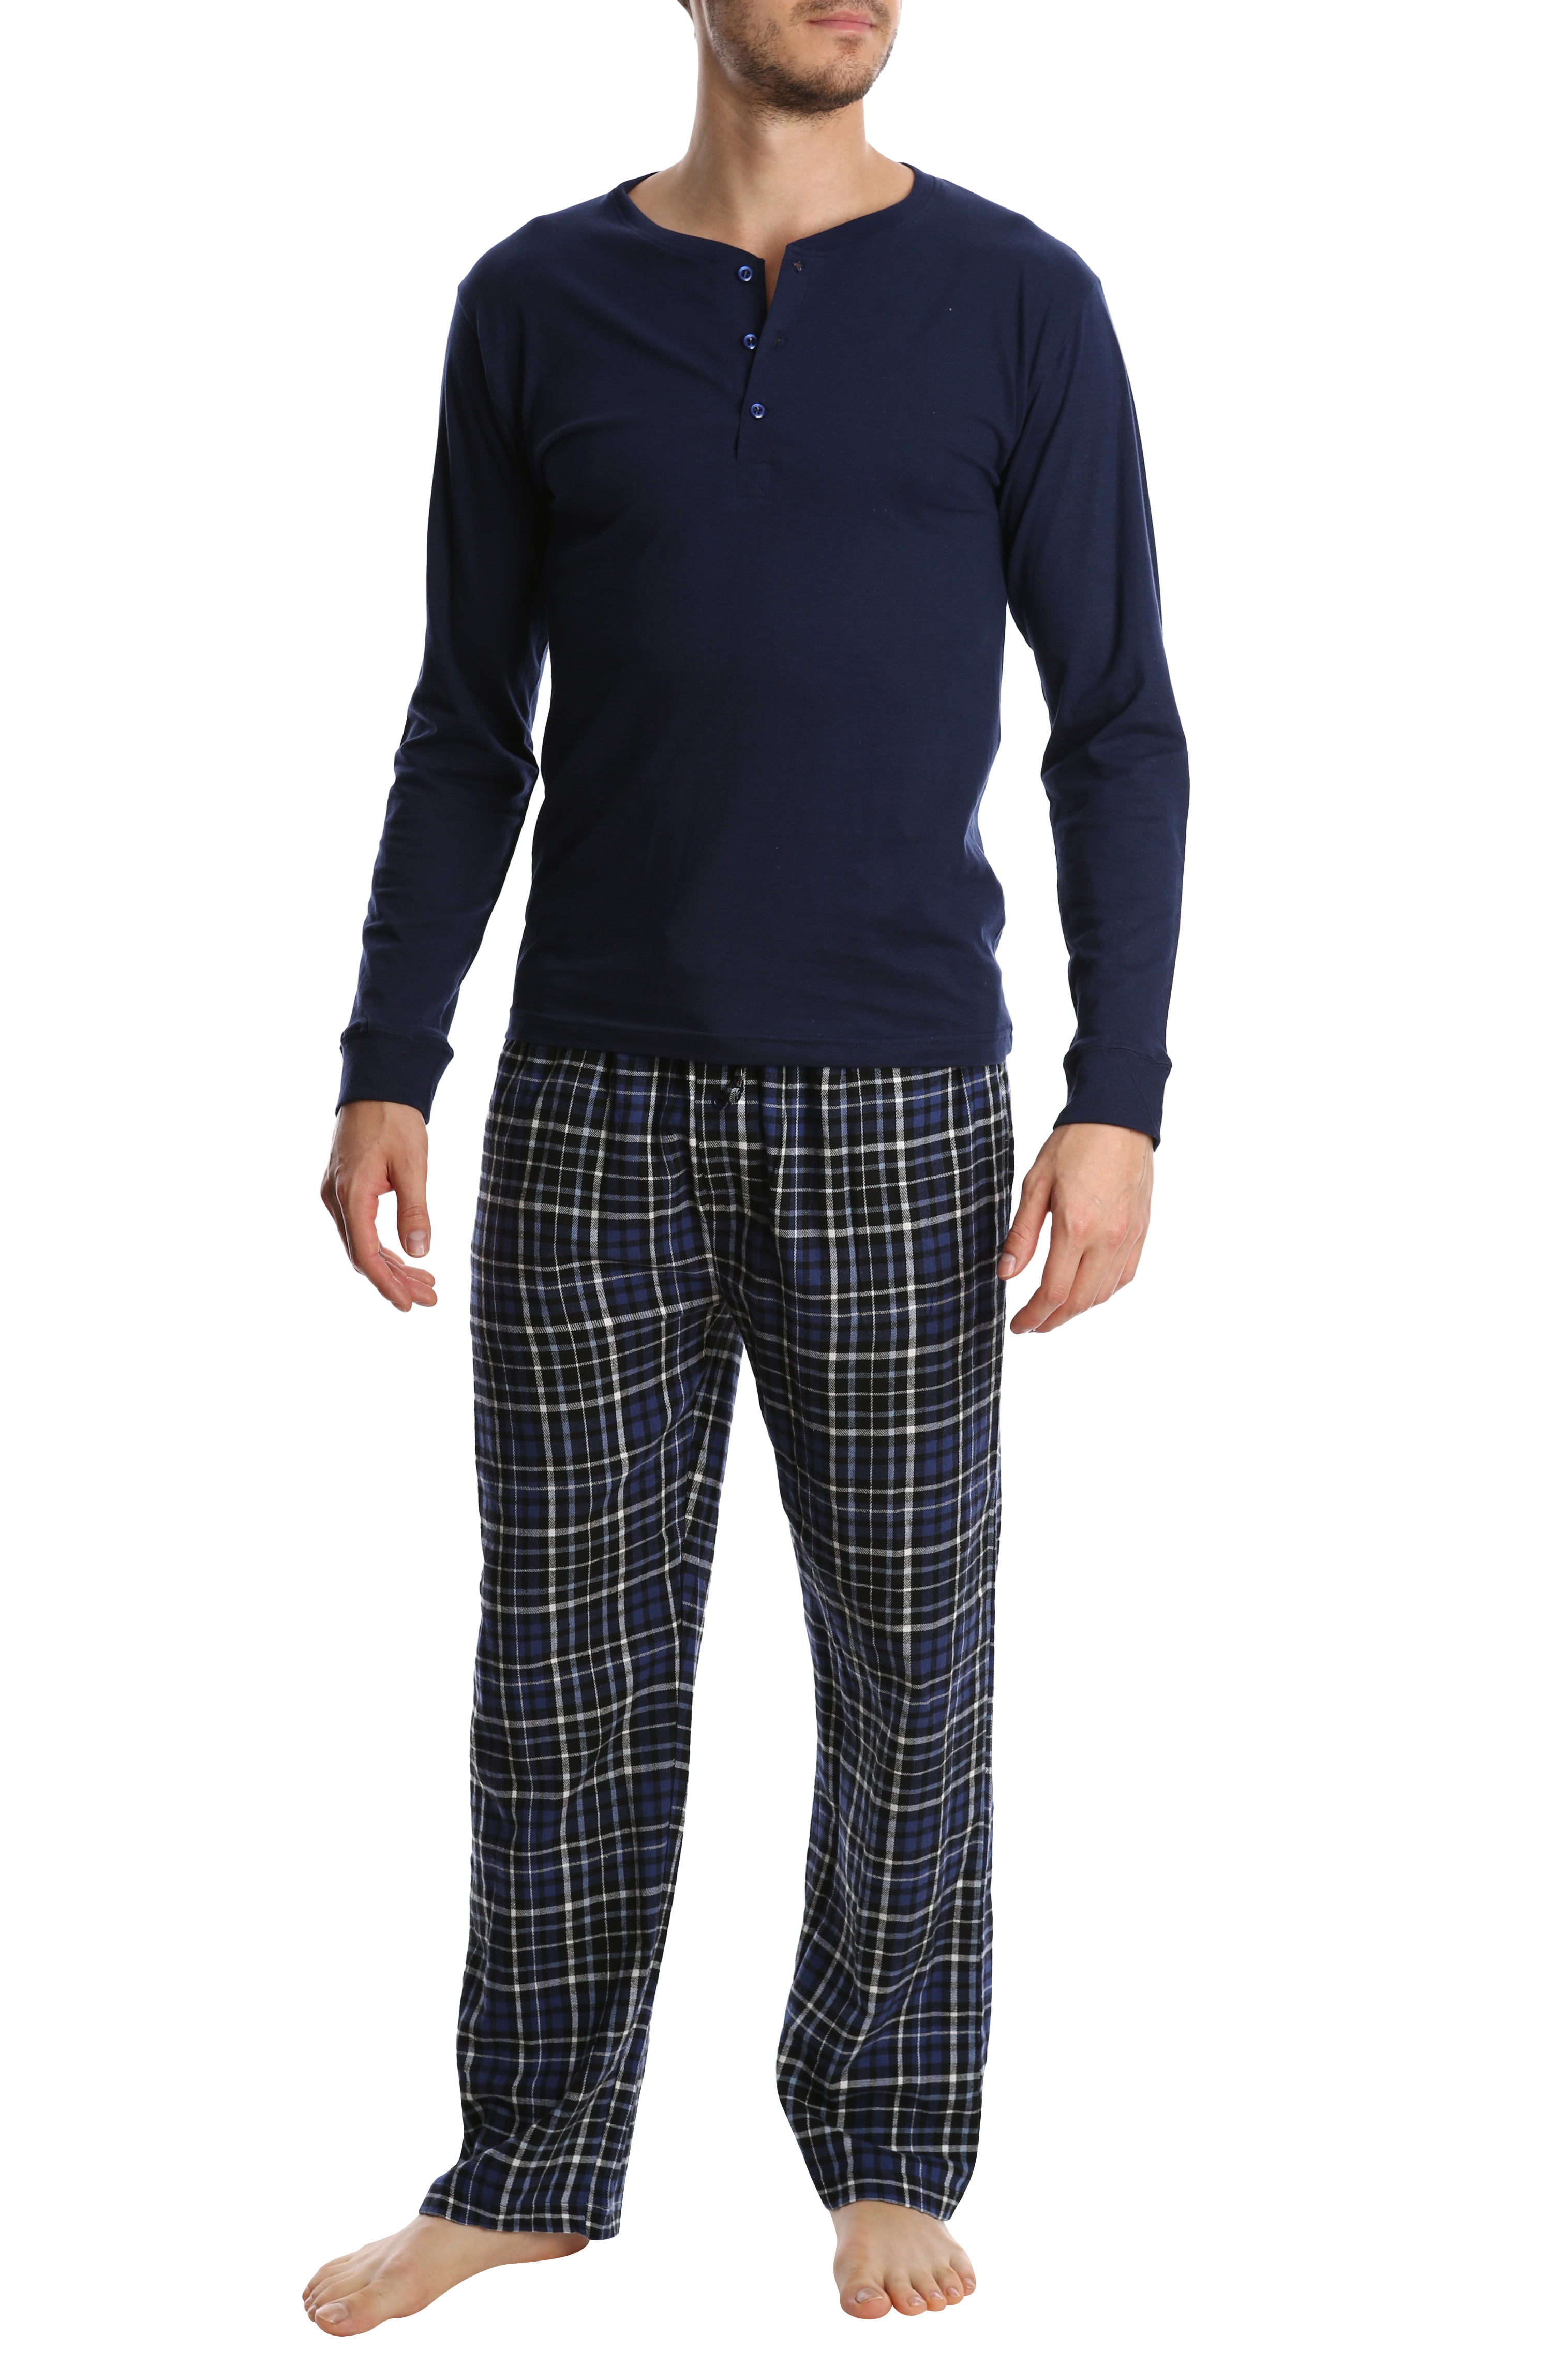 U-WARDROBE Mens Long Sleeve Sleep Top and Bottom Sleepwear Holiday Pajama Set 